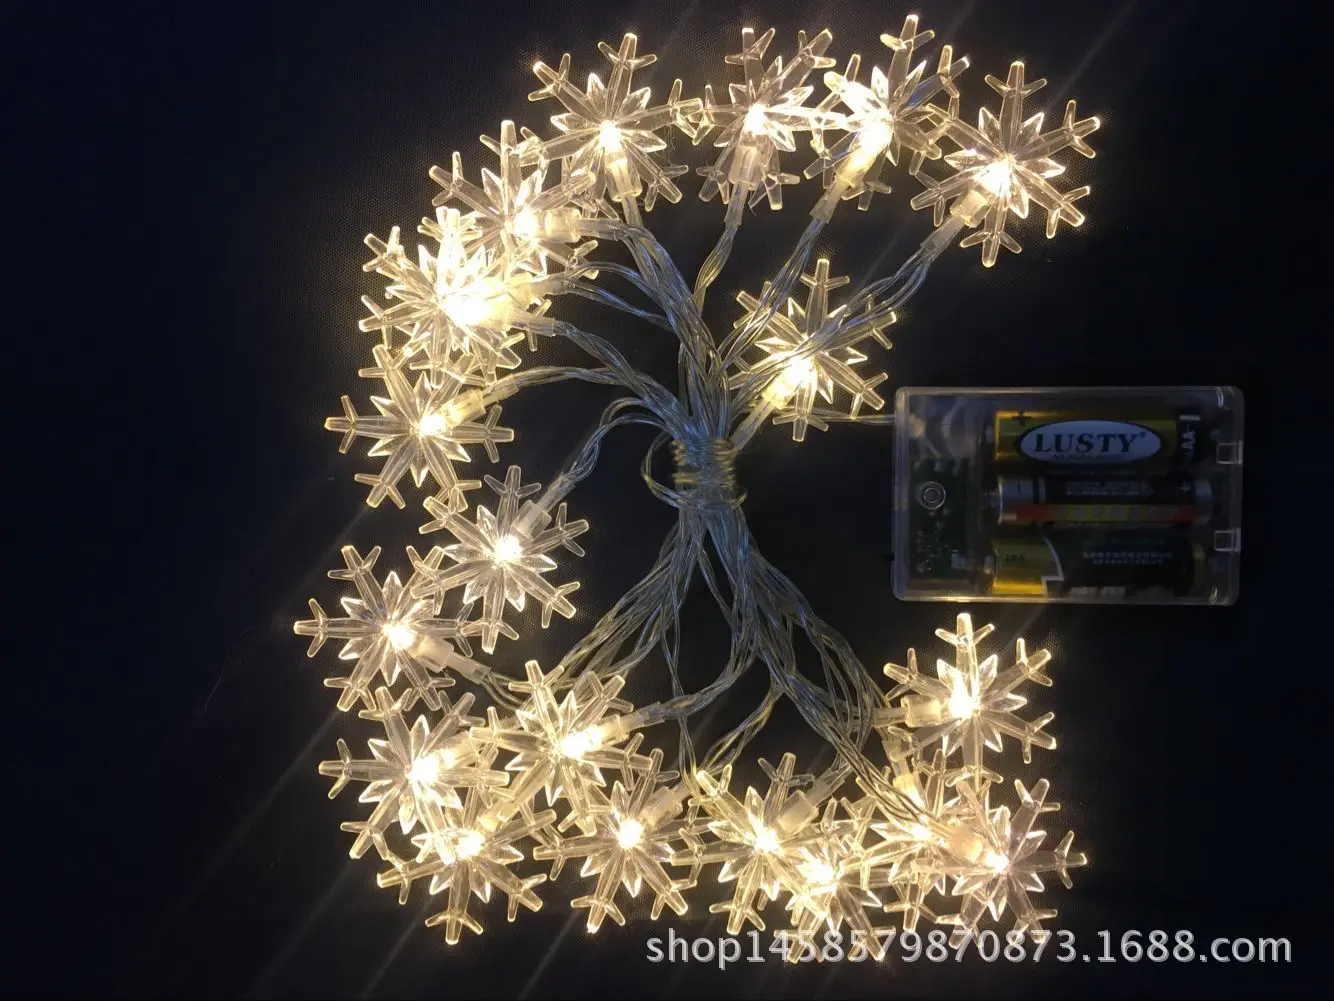 Праздничные светодиодные лампы в форме снежинок с меховыми помпонами-Батарея освещение цепи напрямую от производителя хит продаж на